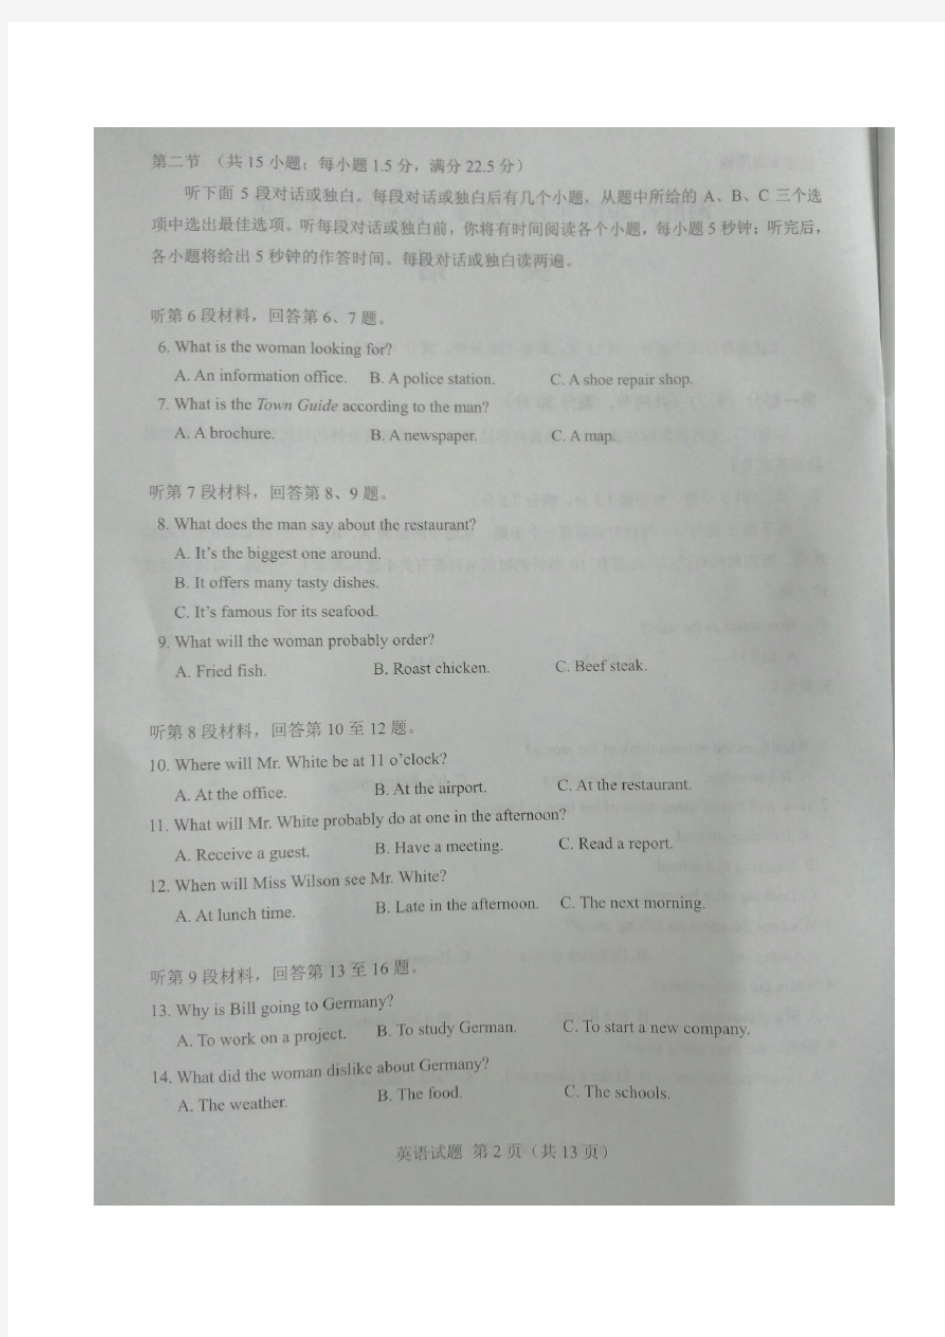 2017湖南省对口升学英语试题